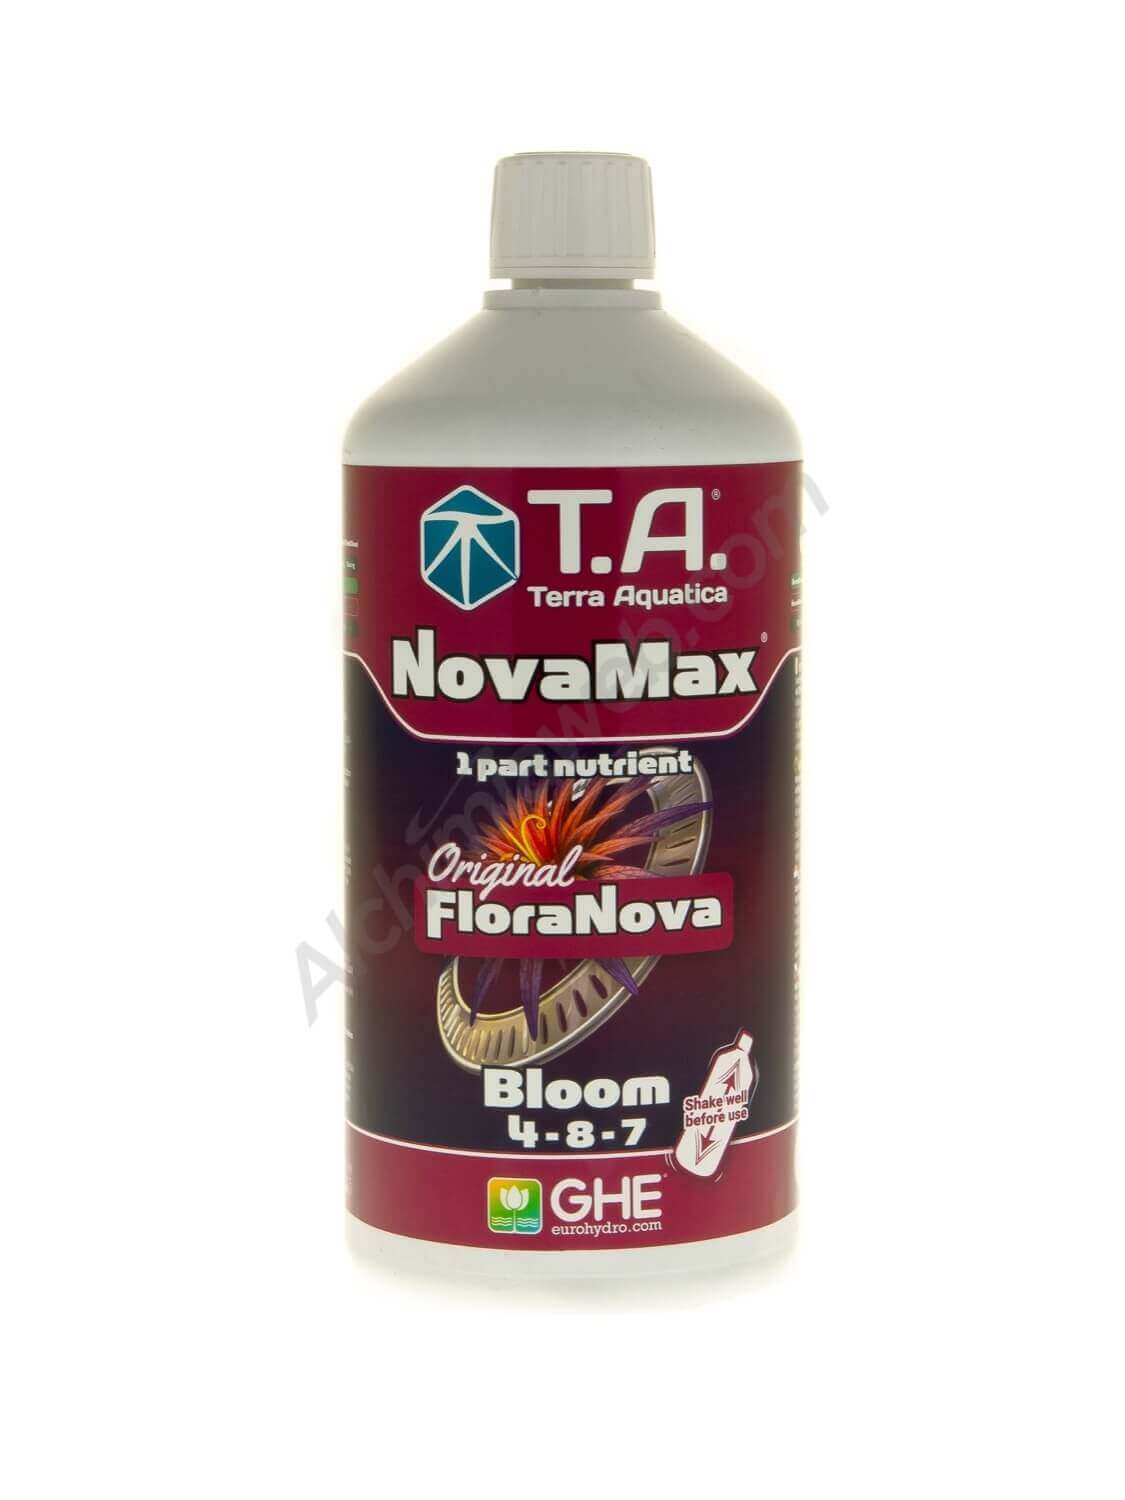 NovaMax Bloom de T.A. (antes Floranova® Bloom de GHE)